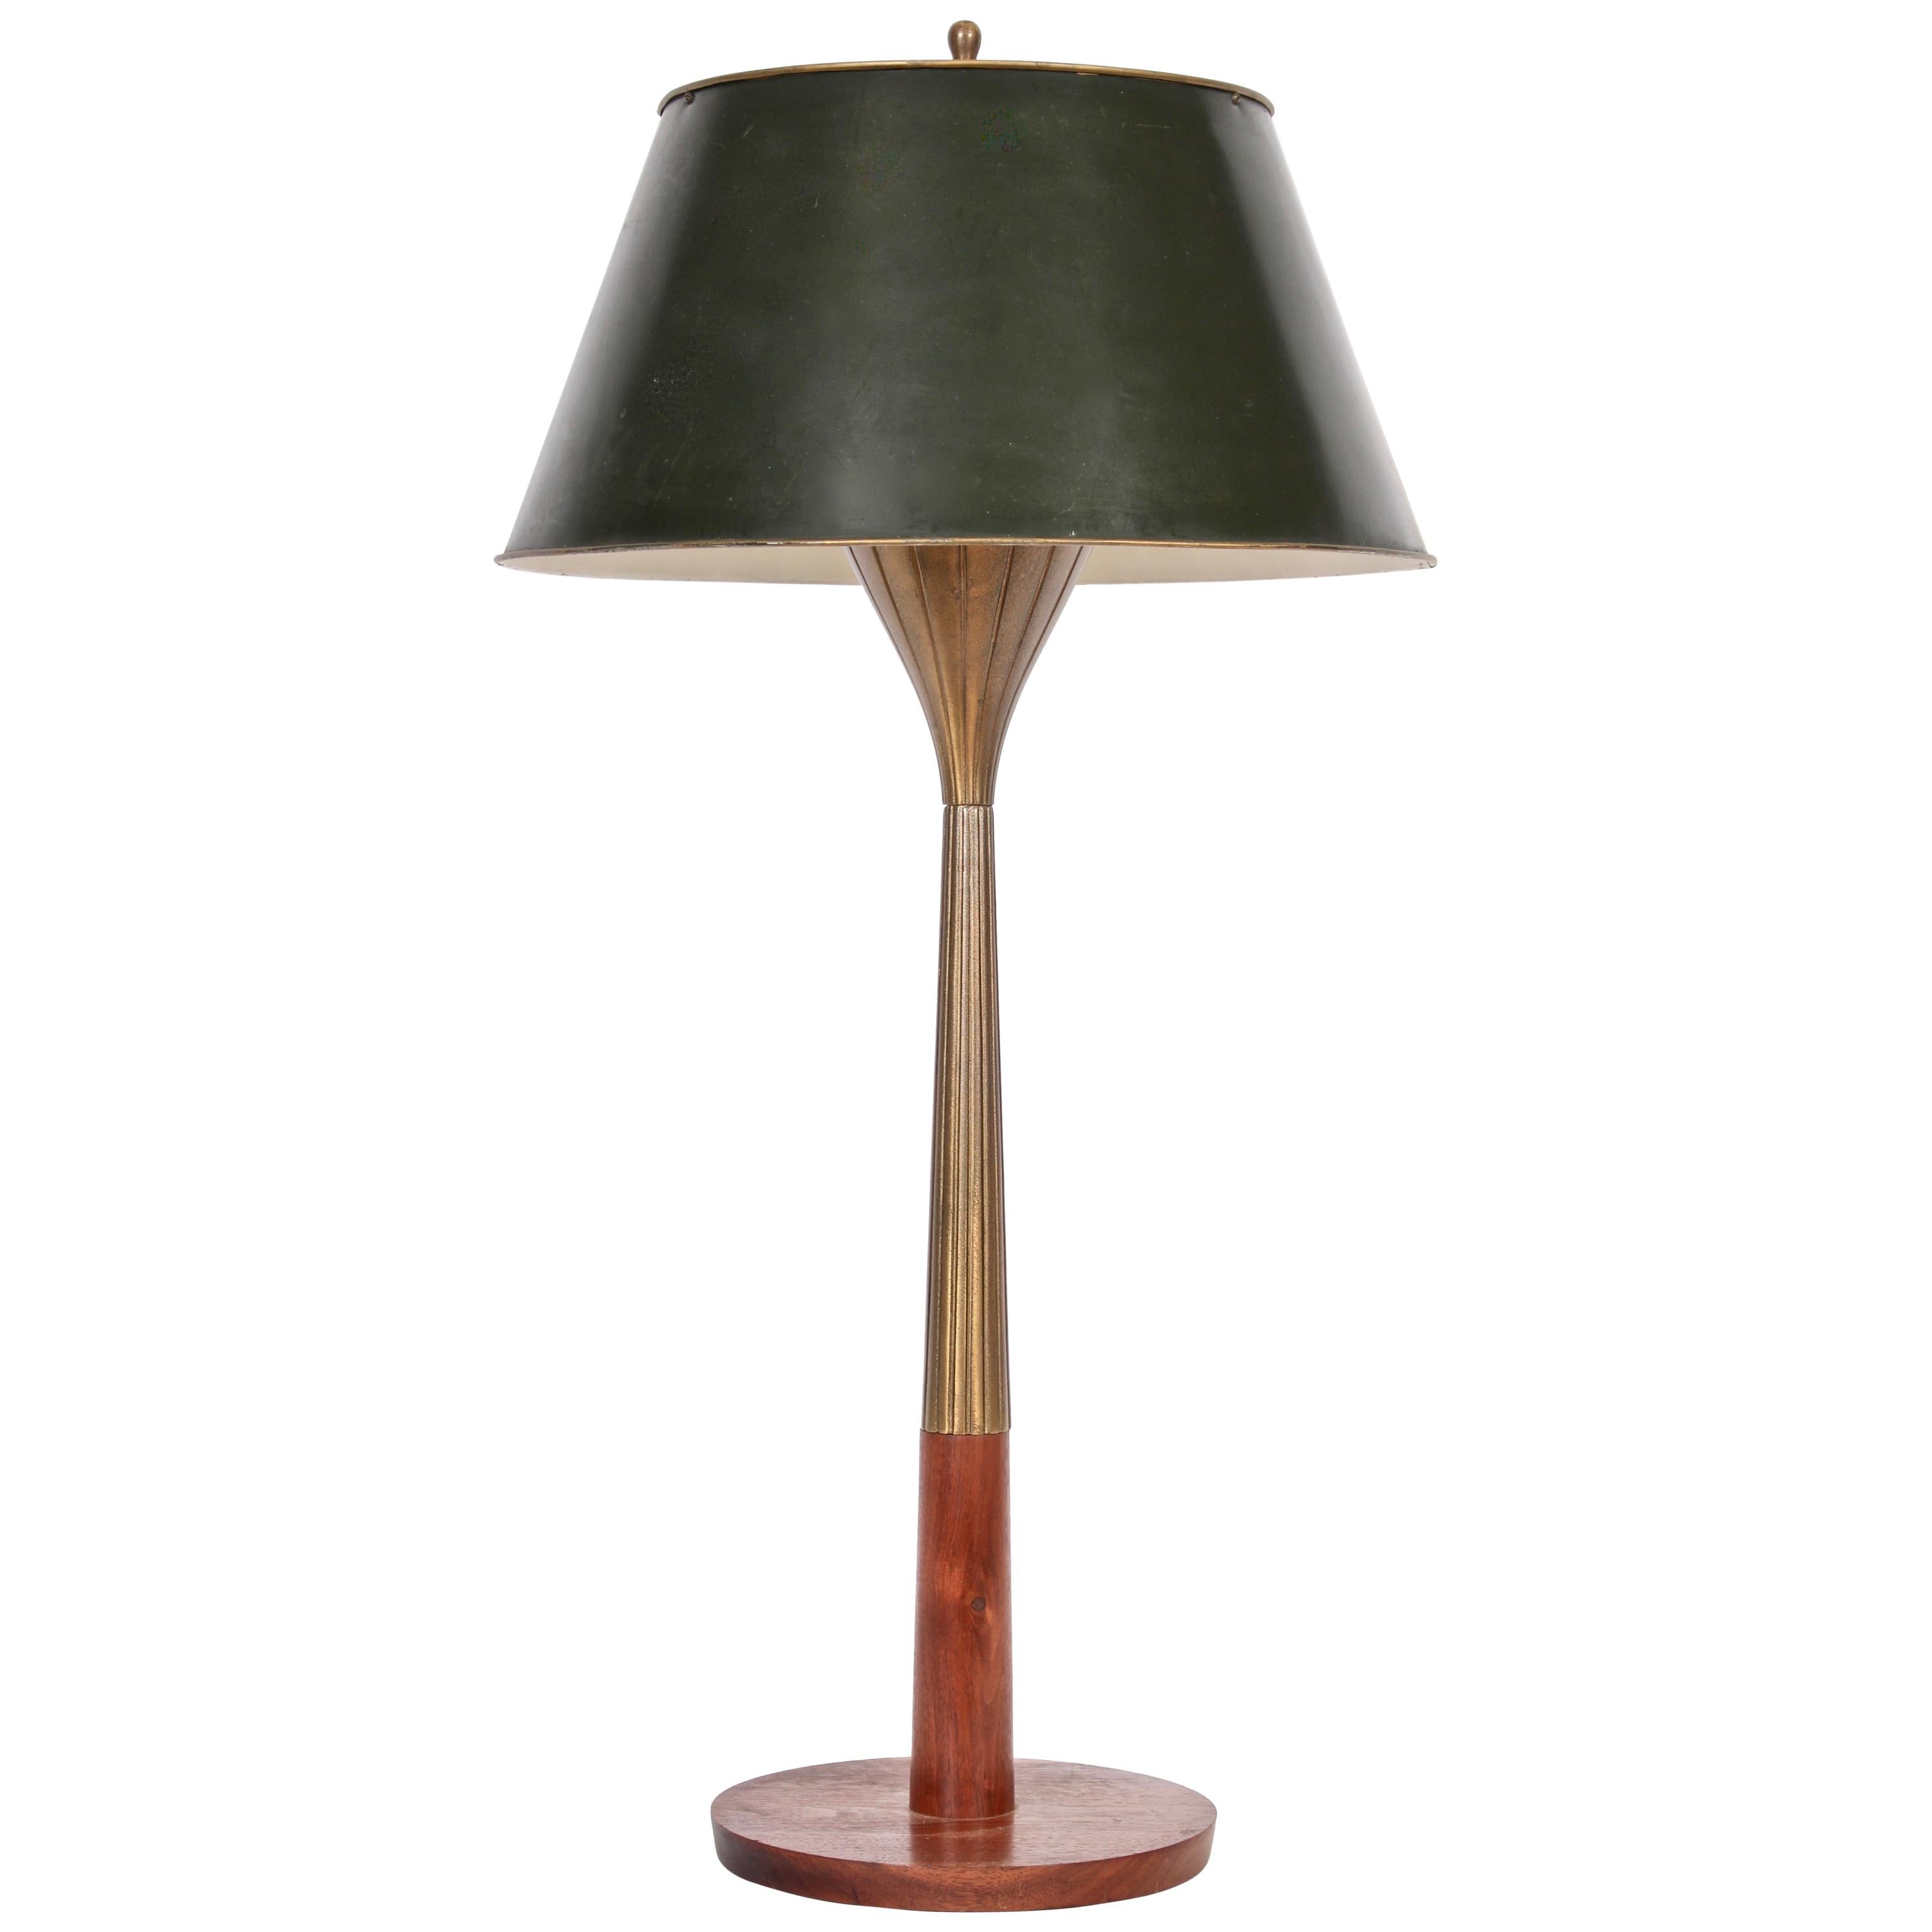 Tall Gerald Thurston for Lightolier Radiating Brass & Walnut Table Lamp